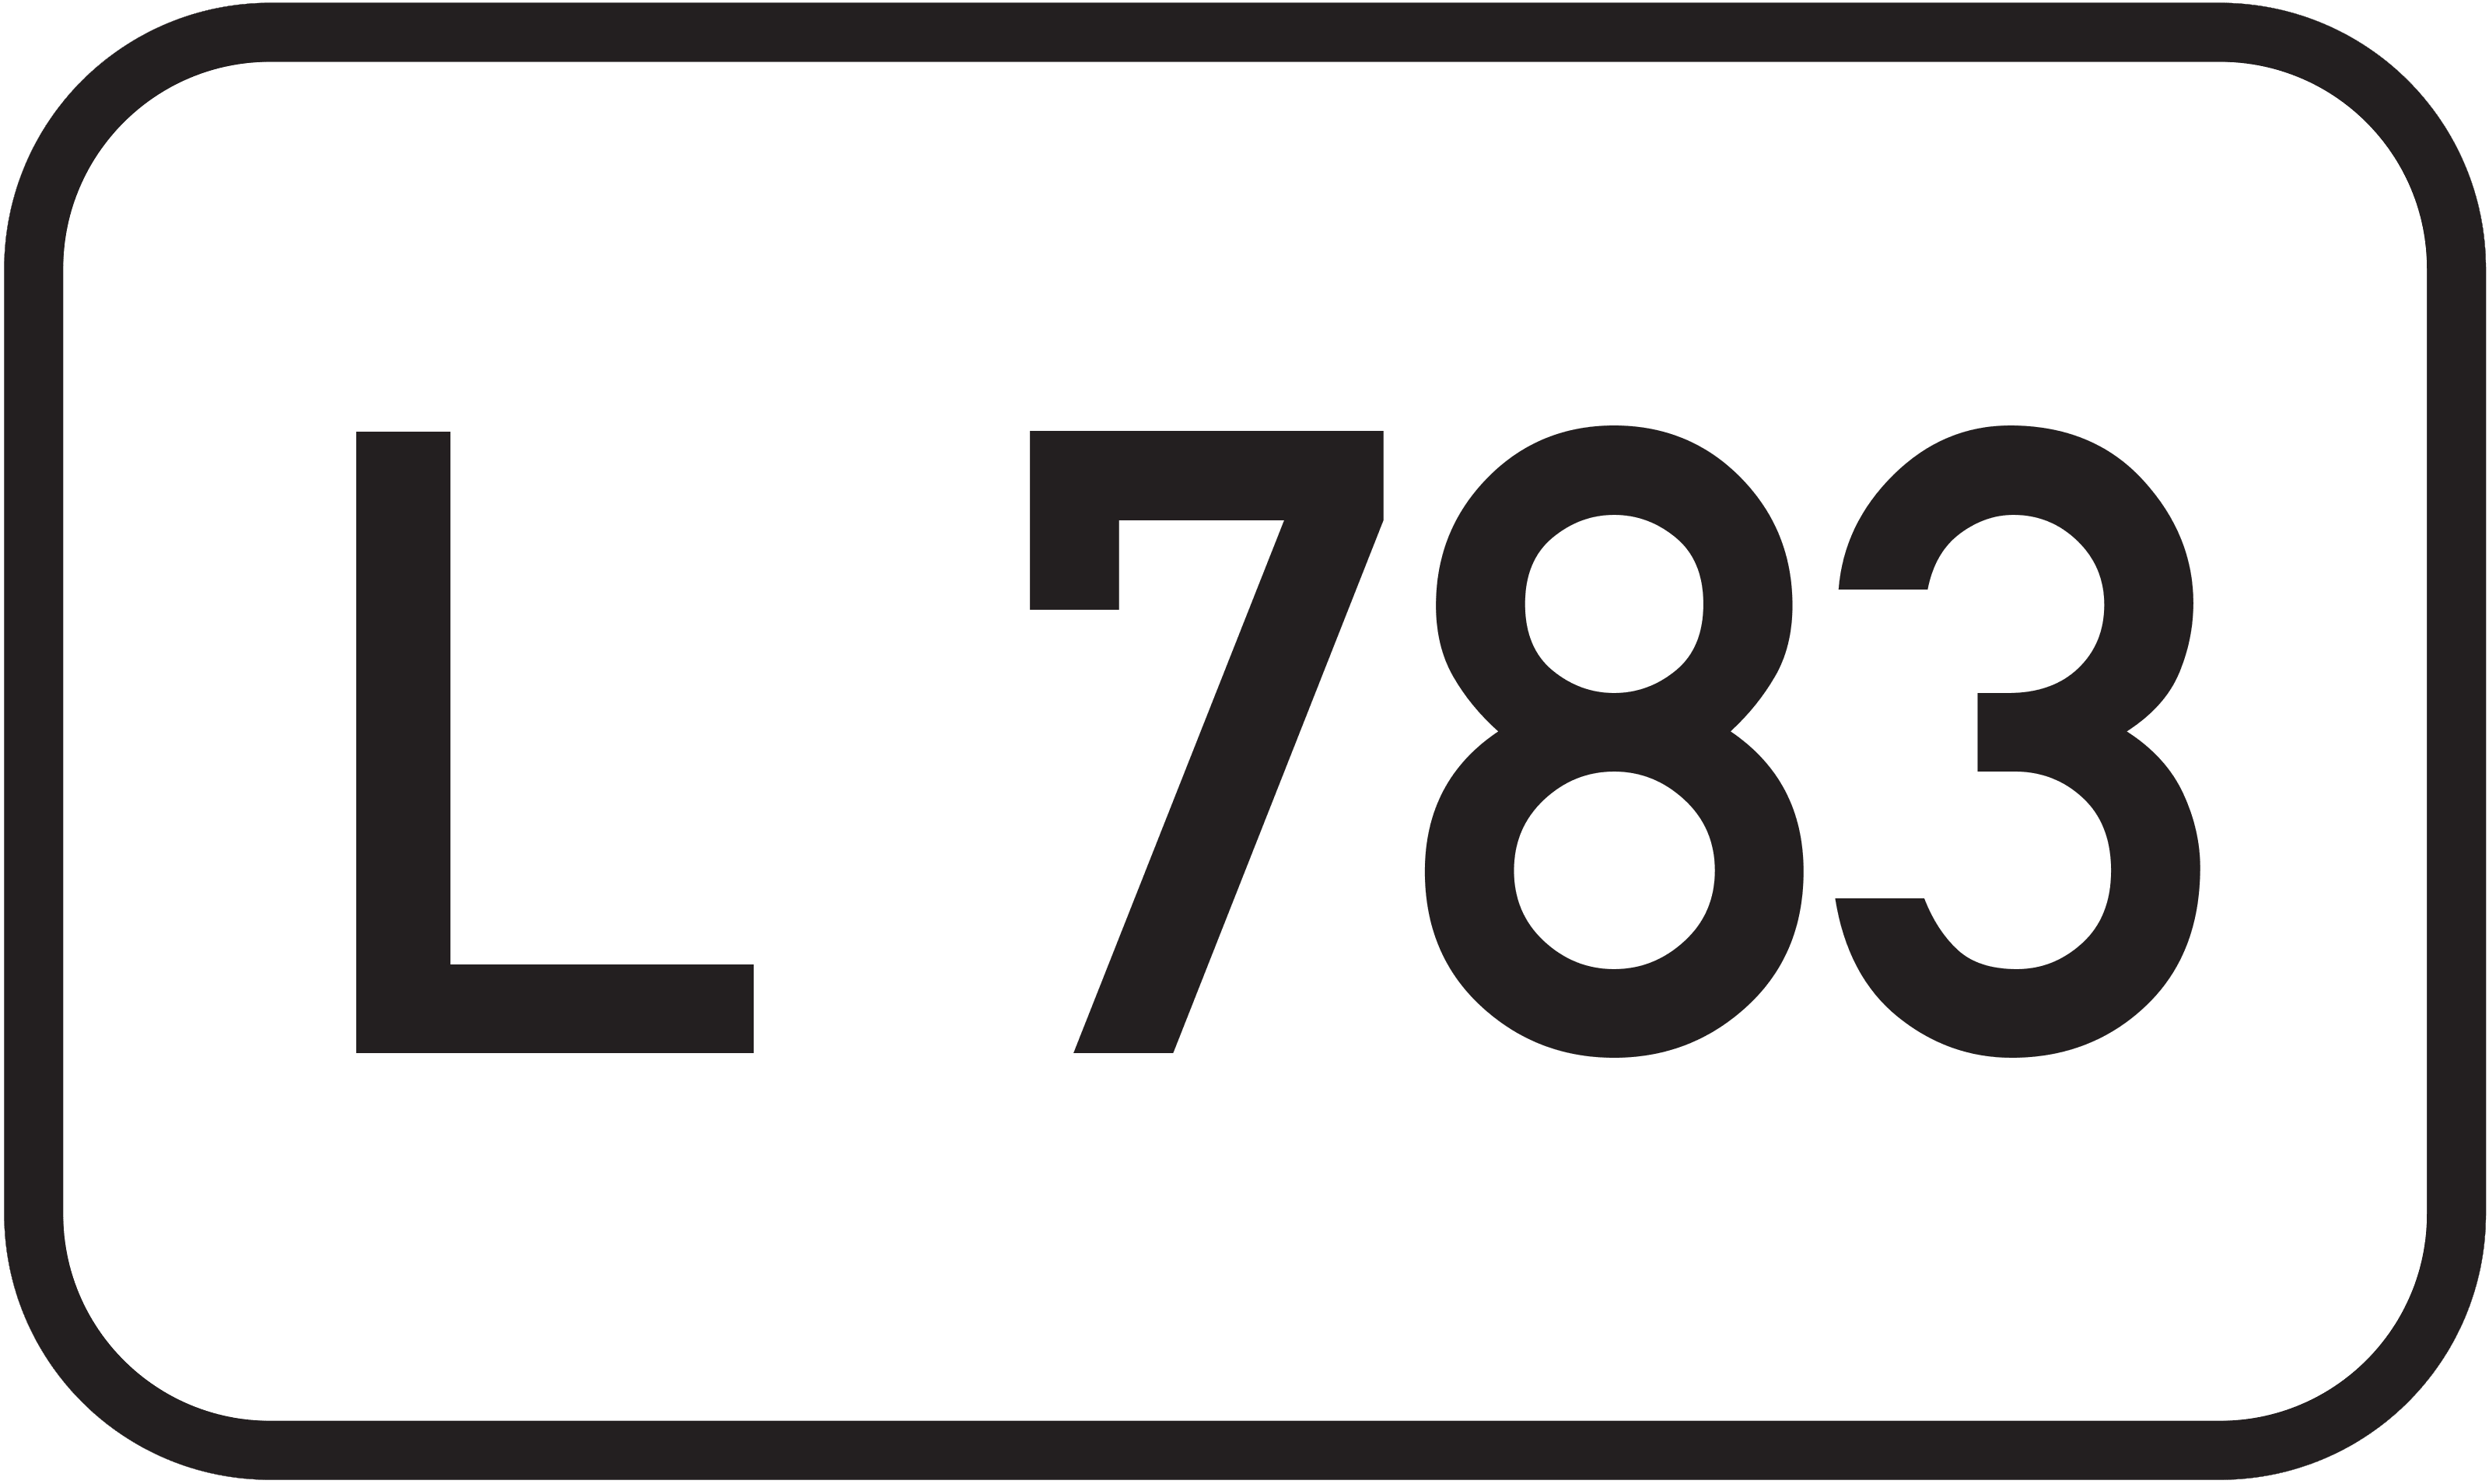 Landesstraße L 783